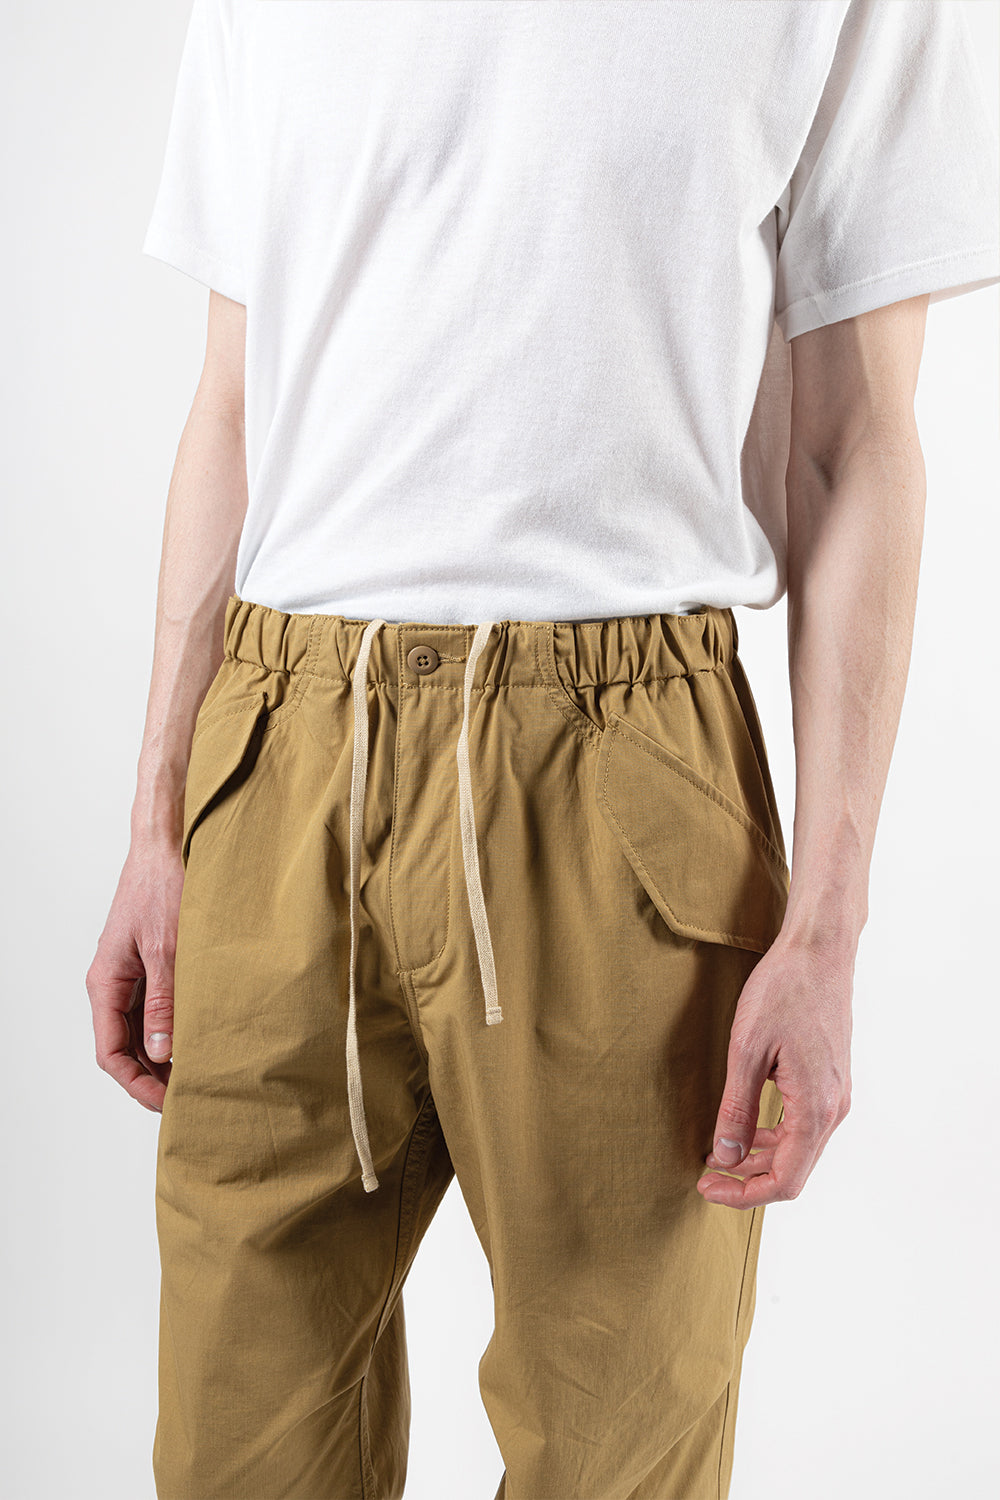 goldwin-wide-easy-wind-pants-beige